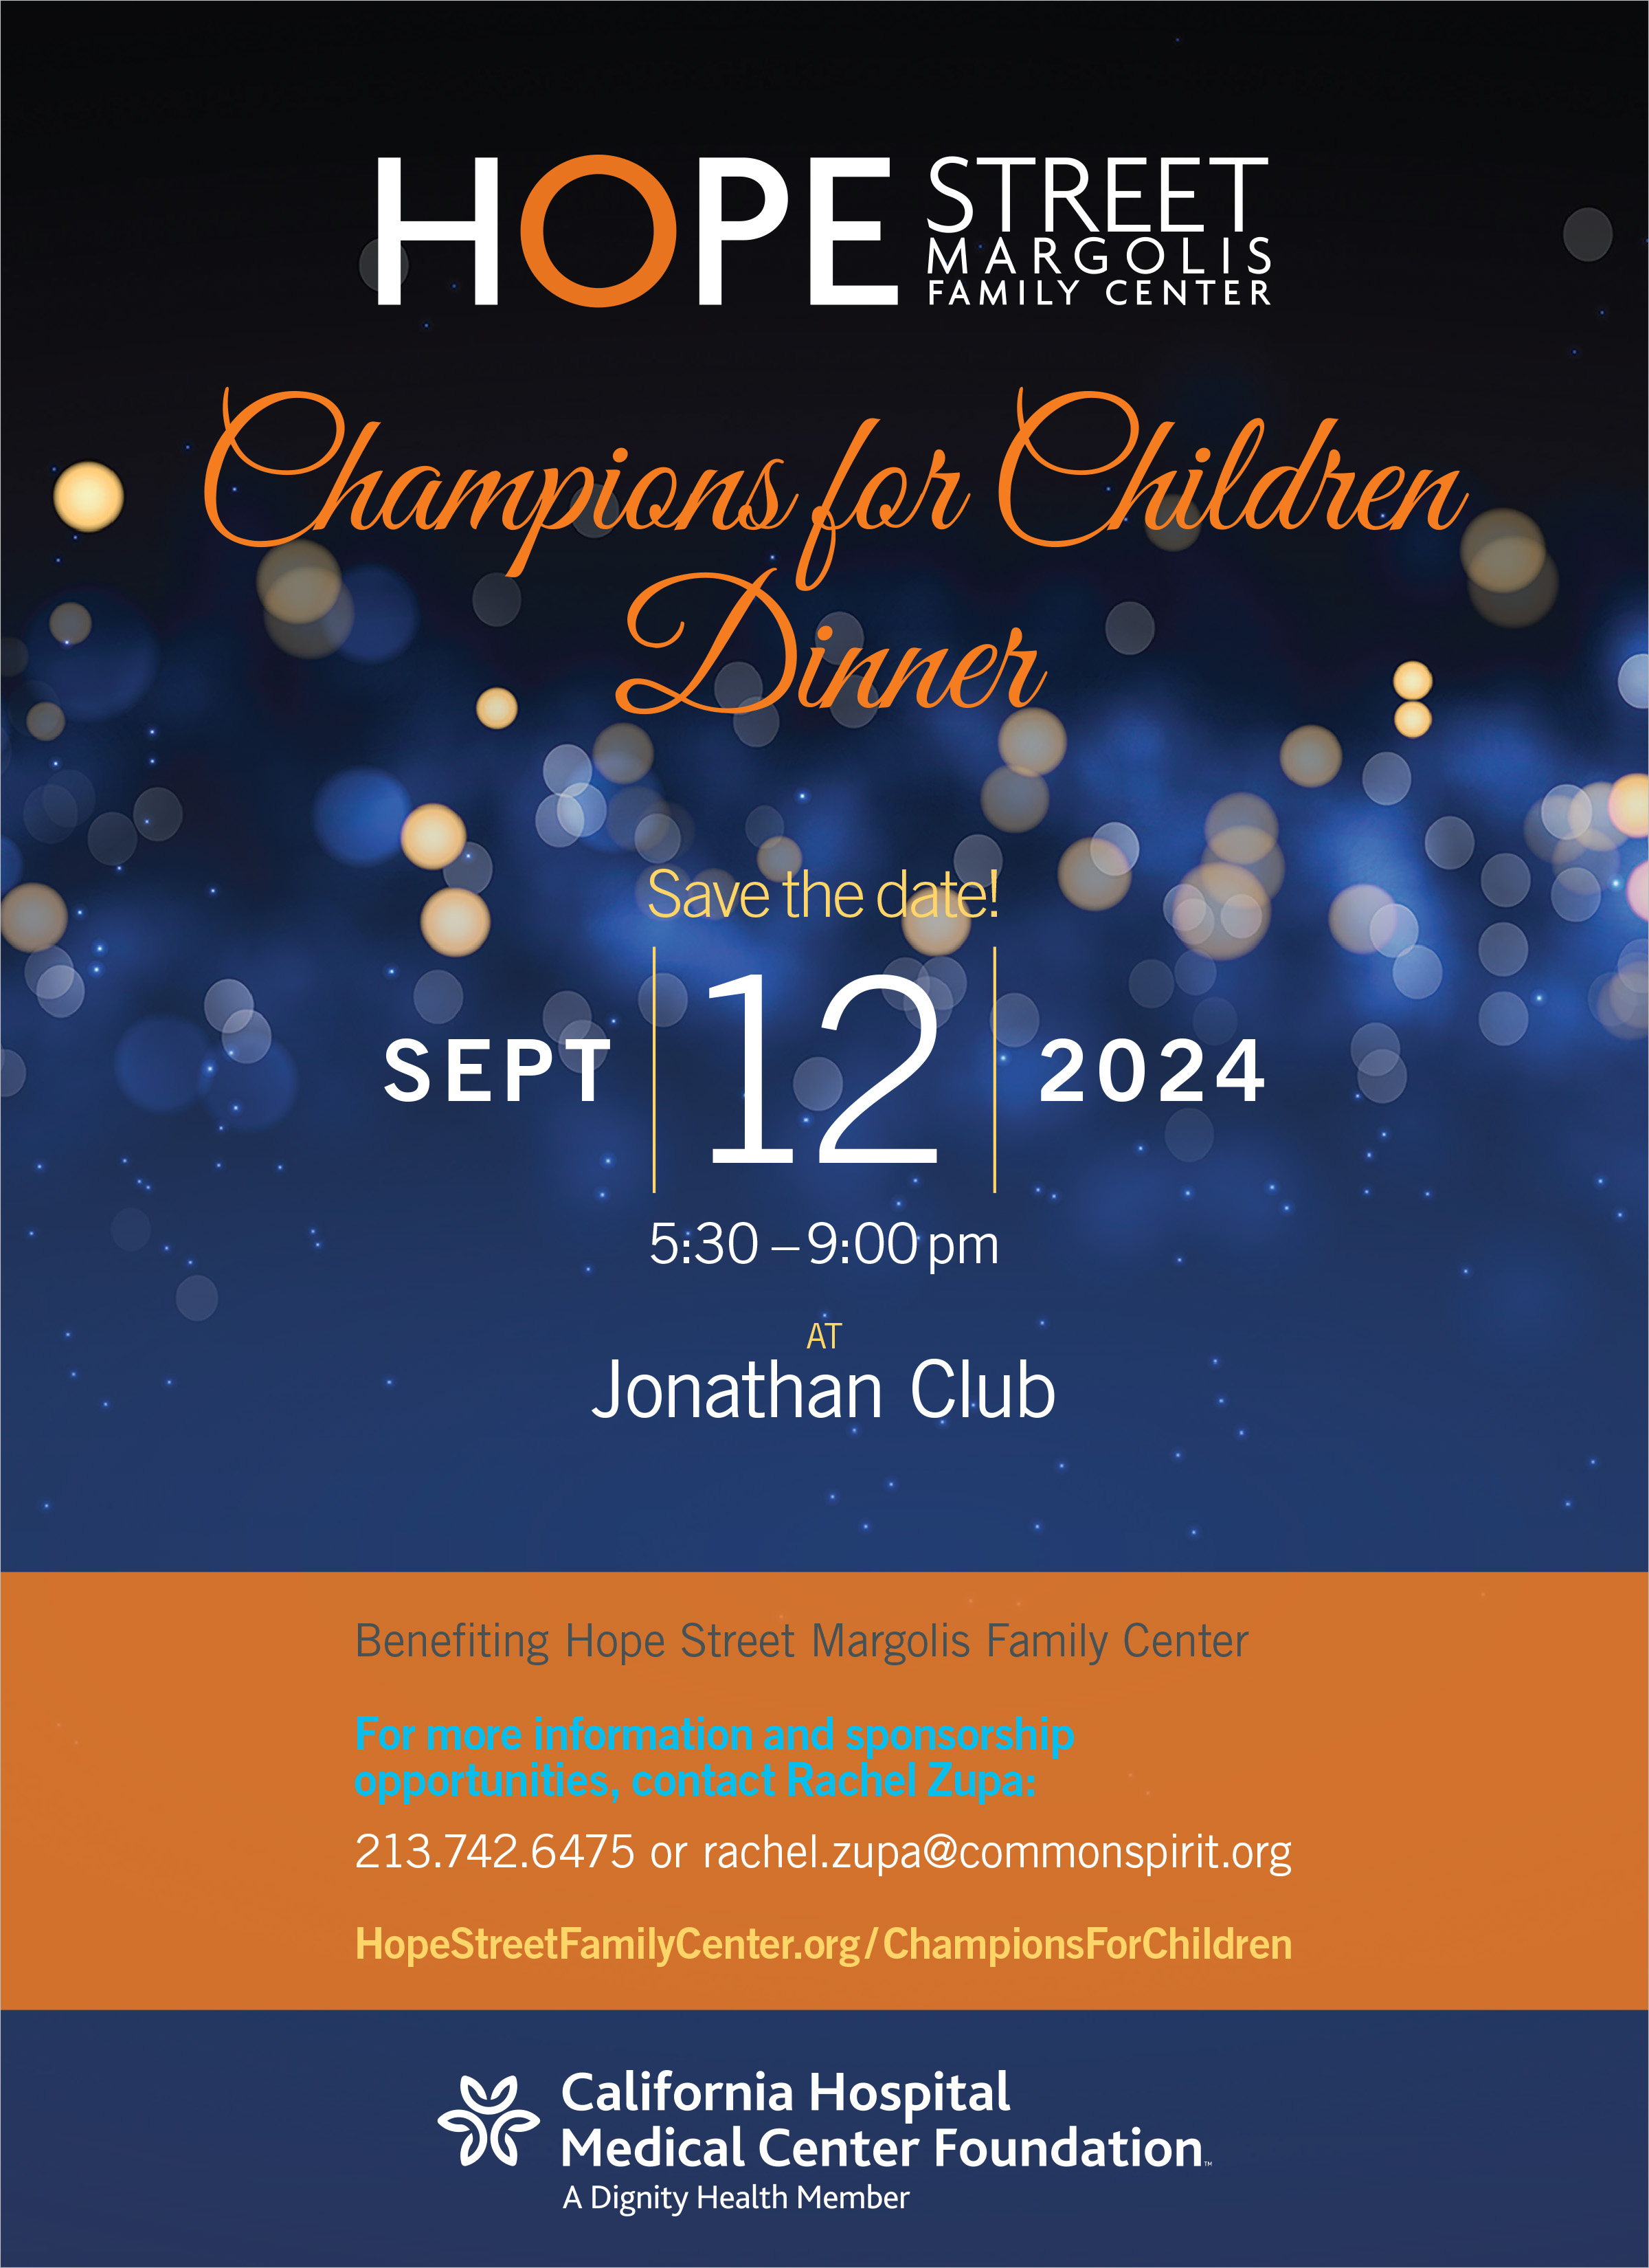 2024 Champions for Children Dinner is Thursday, September 12